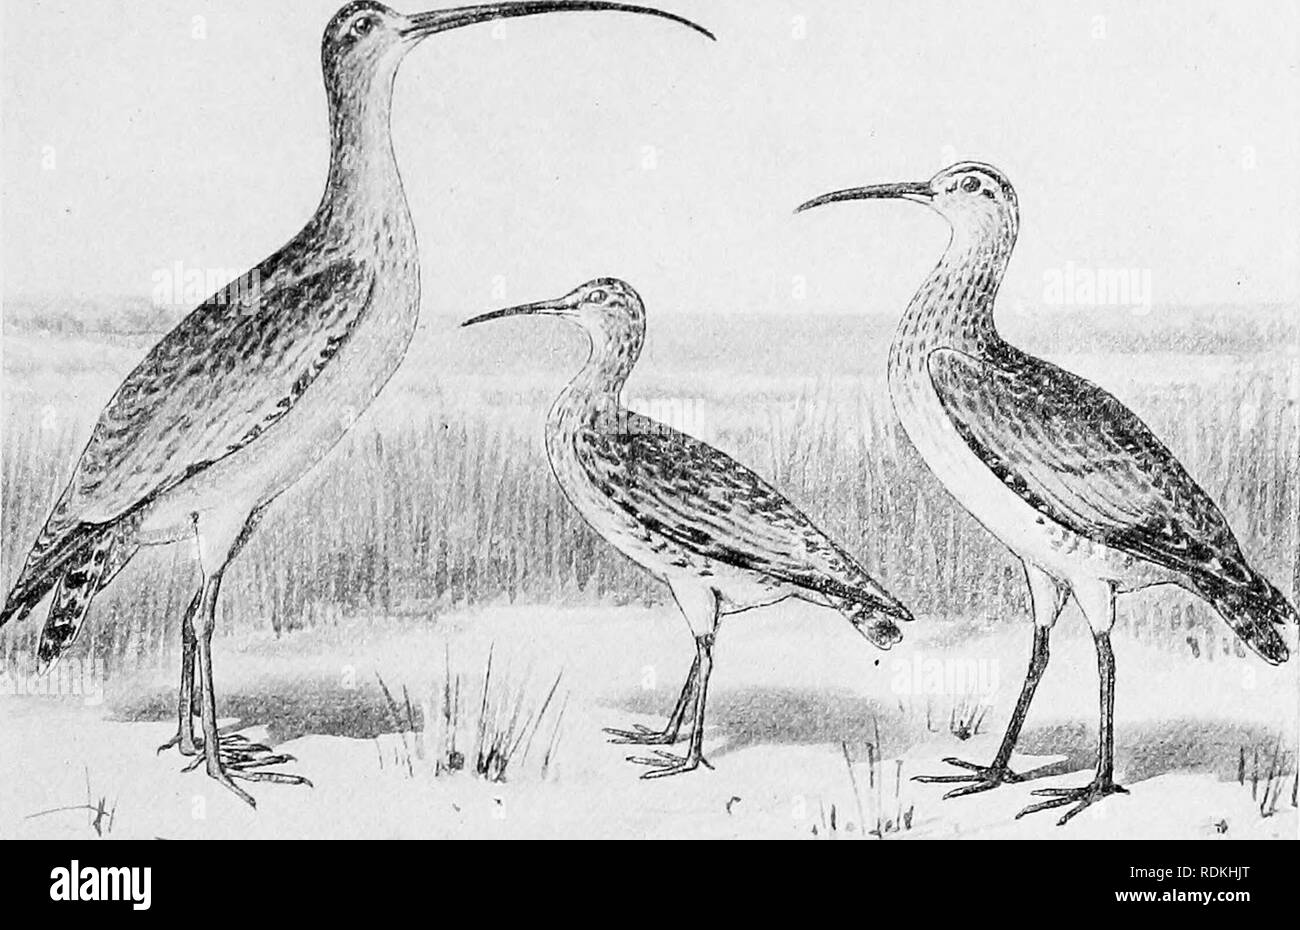 . Les oiseaux de l'Illinois et du Wisconsin. Les oiseaux ; les oiseaux. Janv., 1909. Les oiseaux de l'Illinois et WiscoiirsiN - Cory. 421 Les oeufs sont quatre, chamois blanc ou blanc crème, tachetés de brun choco- tard plus prononcée à la plus grande extrémité. Ils mesurent environ 1,30 X 0,95 pouces. Il y a plusieurs ensembles de au Field Museum perception prises dans le nord de l'Illinois entre le 8 juin et j6e, et d'un jeu de Boulder County, Wisconsin, prises le 11 juin, j'ai88g. Genre NUMENIUS Brisson.. Courlis à long bec. Le Courlis esquimau. Courlis hudsonien. 131. Numenius americanus Bechstein. Courlis à long bec. Numenius longirostris Wils, A. 0. Banque D'Images